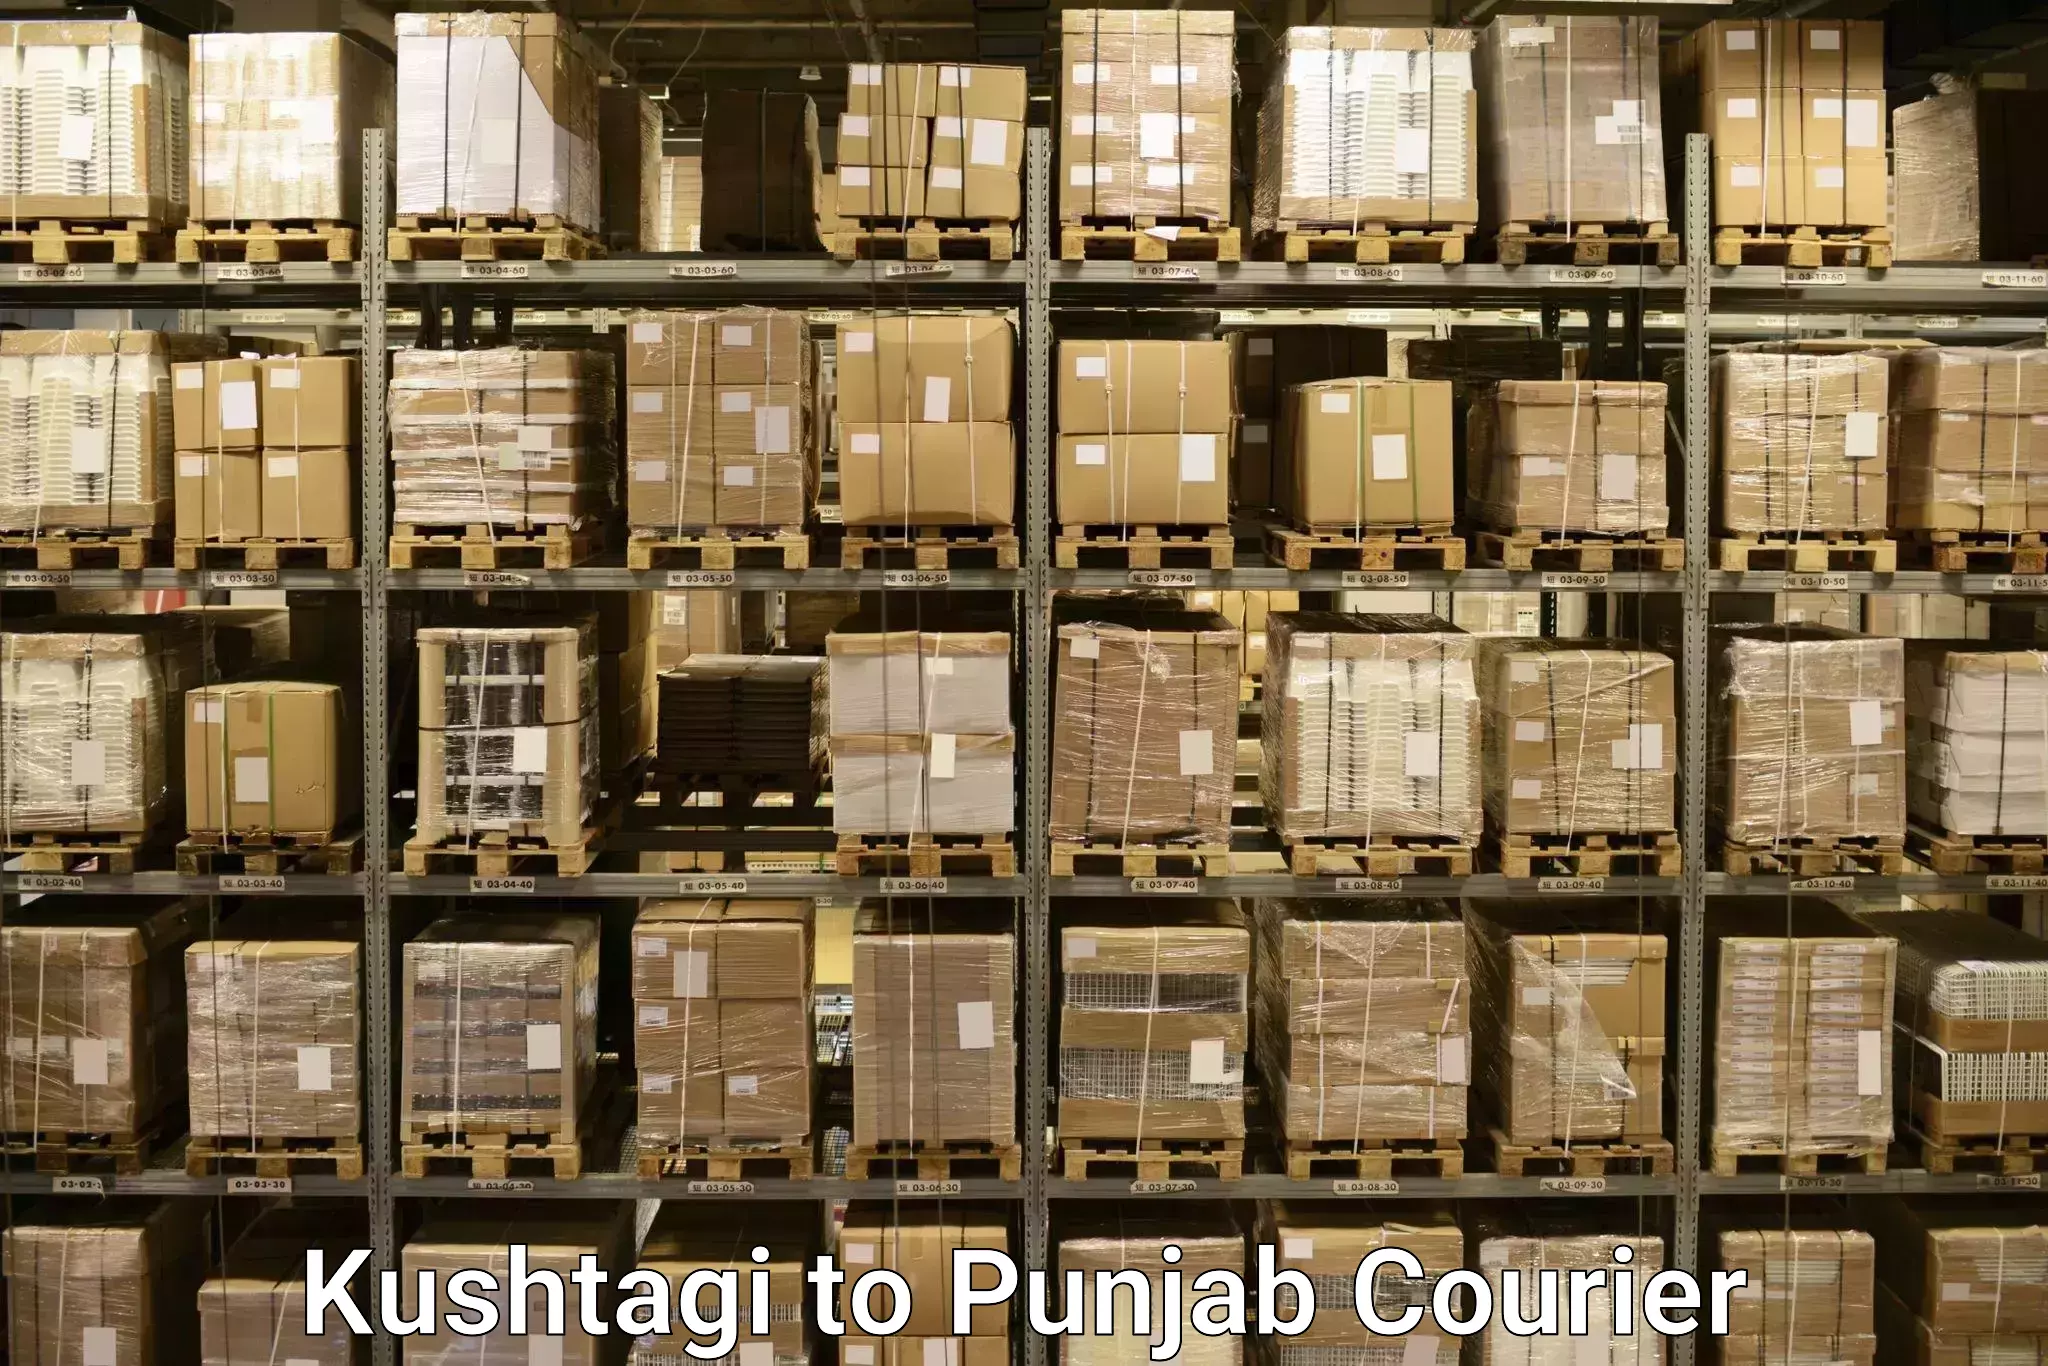 Luggage transfer service Kushtagi to Central University of Punjab Bathinda